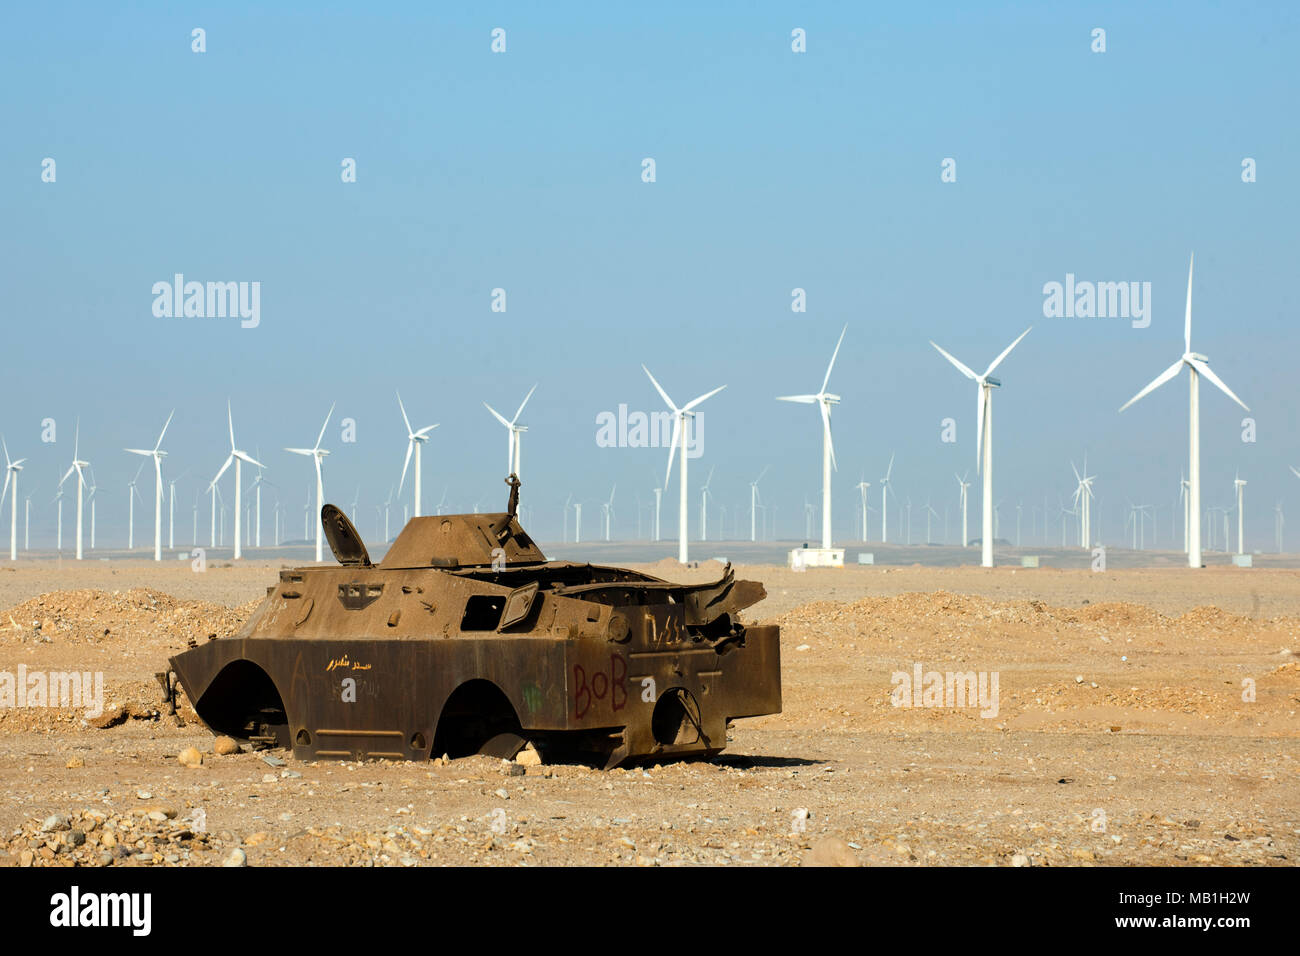 Aegypten ha, Ras Zafarana, Panzer aus dem israelisch-‰gyptischen Krieg vor Windpark Foto Stock